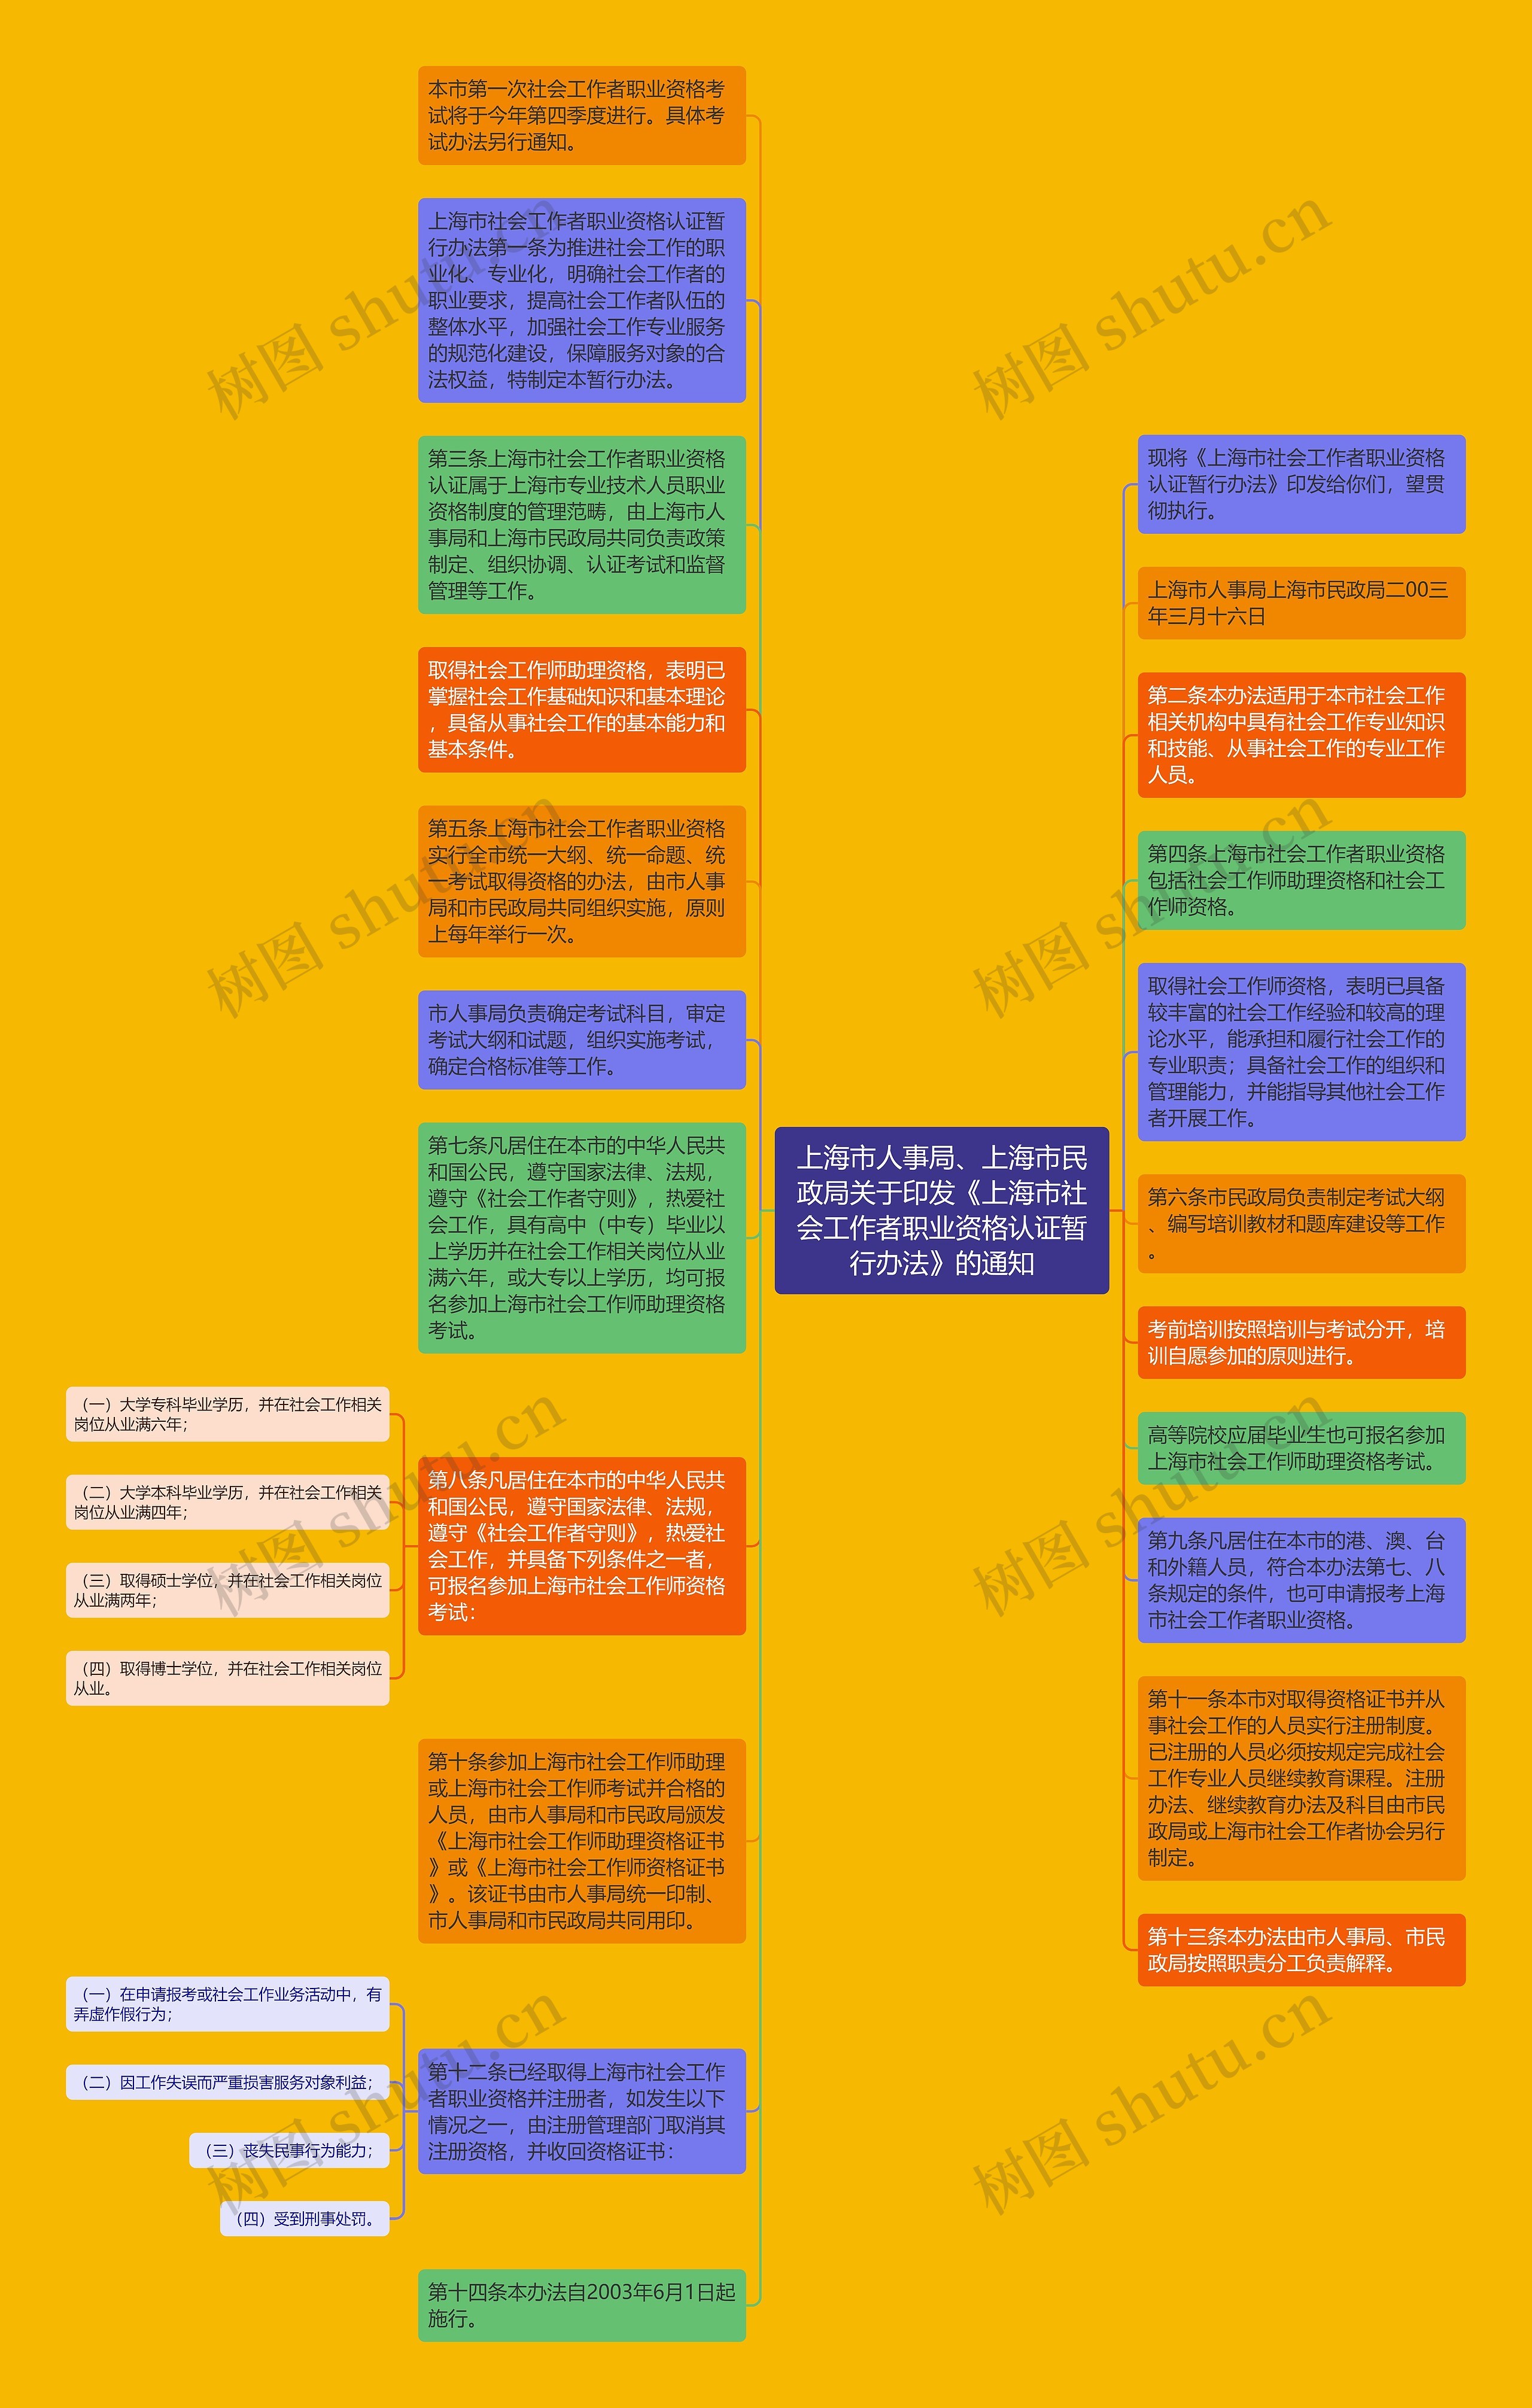 上海市人事局、上海市民政局关于印发《上海市社会工作者职业资格认证暂行办法》的通知思维导图